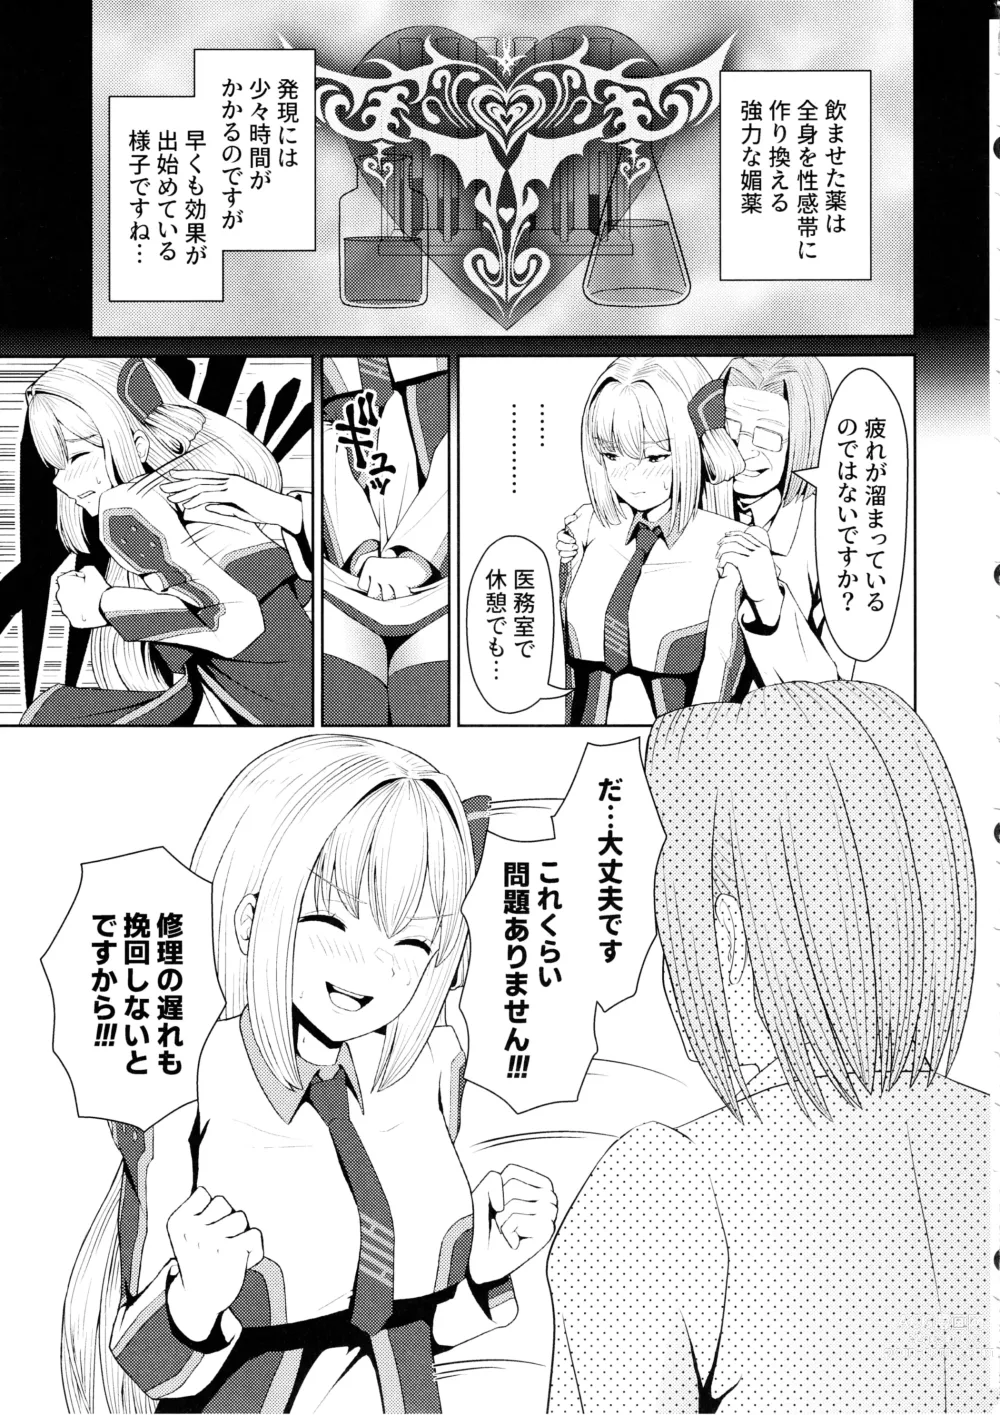 Page 7 of doujinshi Sentouki Kaihatsu Jikken Haiboku Hiroin e no Hijou na Saikyouiku - SKY STRIKER ACE MECHANICAL HENTAI TRAINING